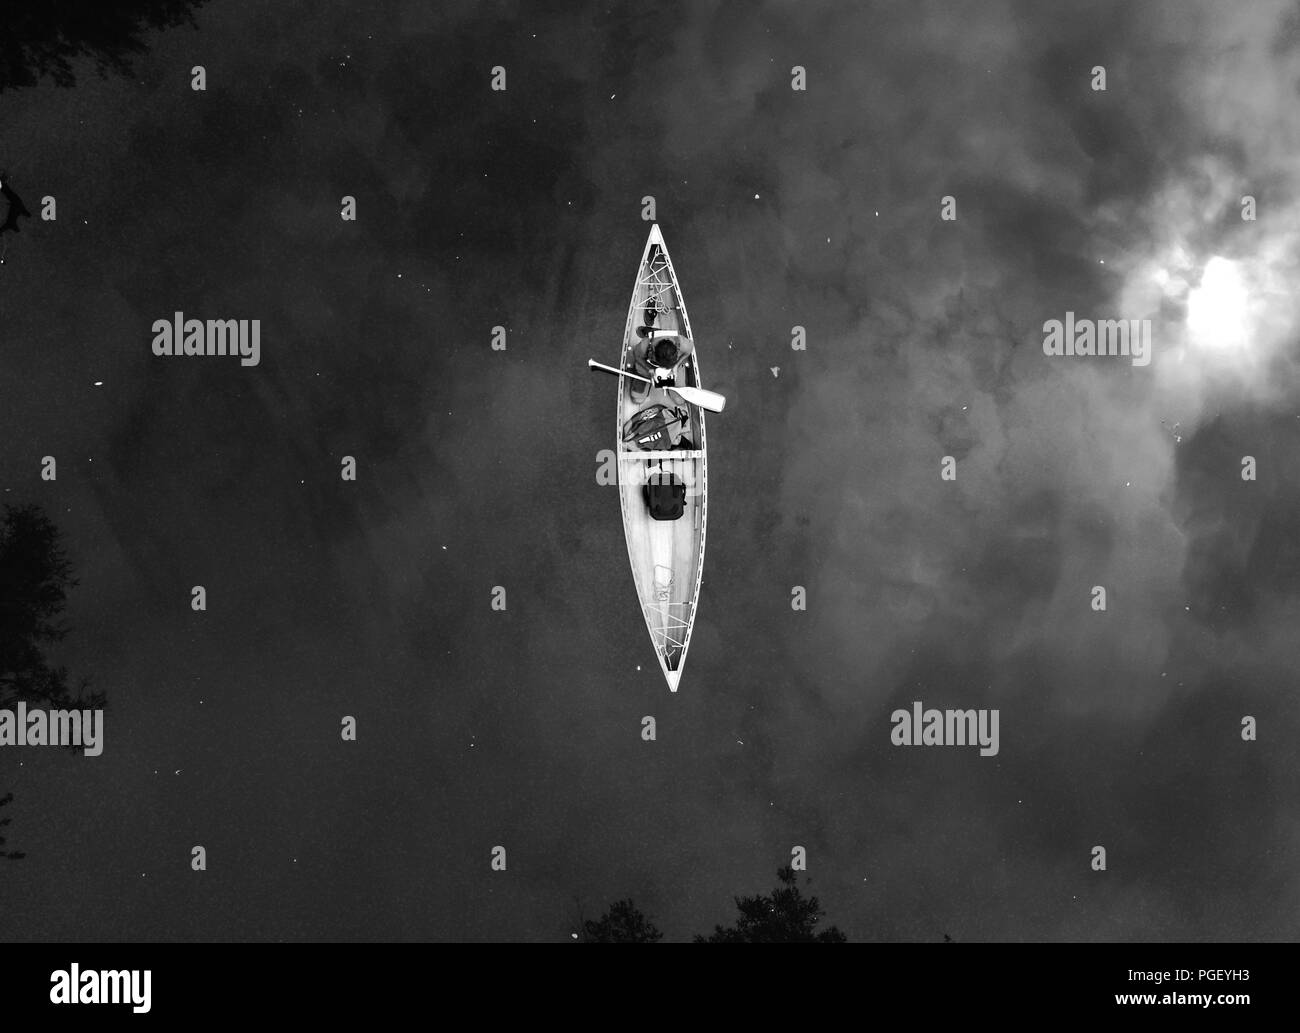 Drohne abgeschossen auf einen Mann in einem Kanadier Kanu auf einem Fluß in Schwarz und Weiß Stockfoto